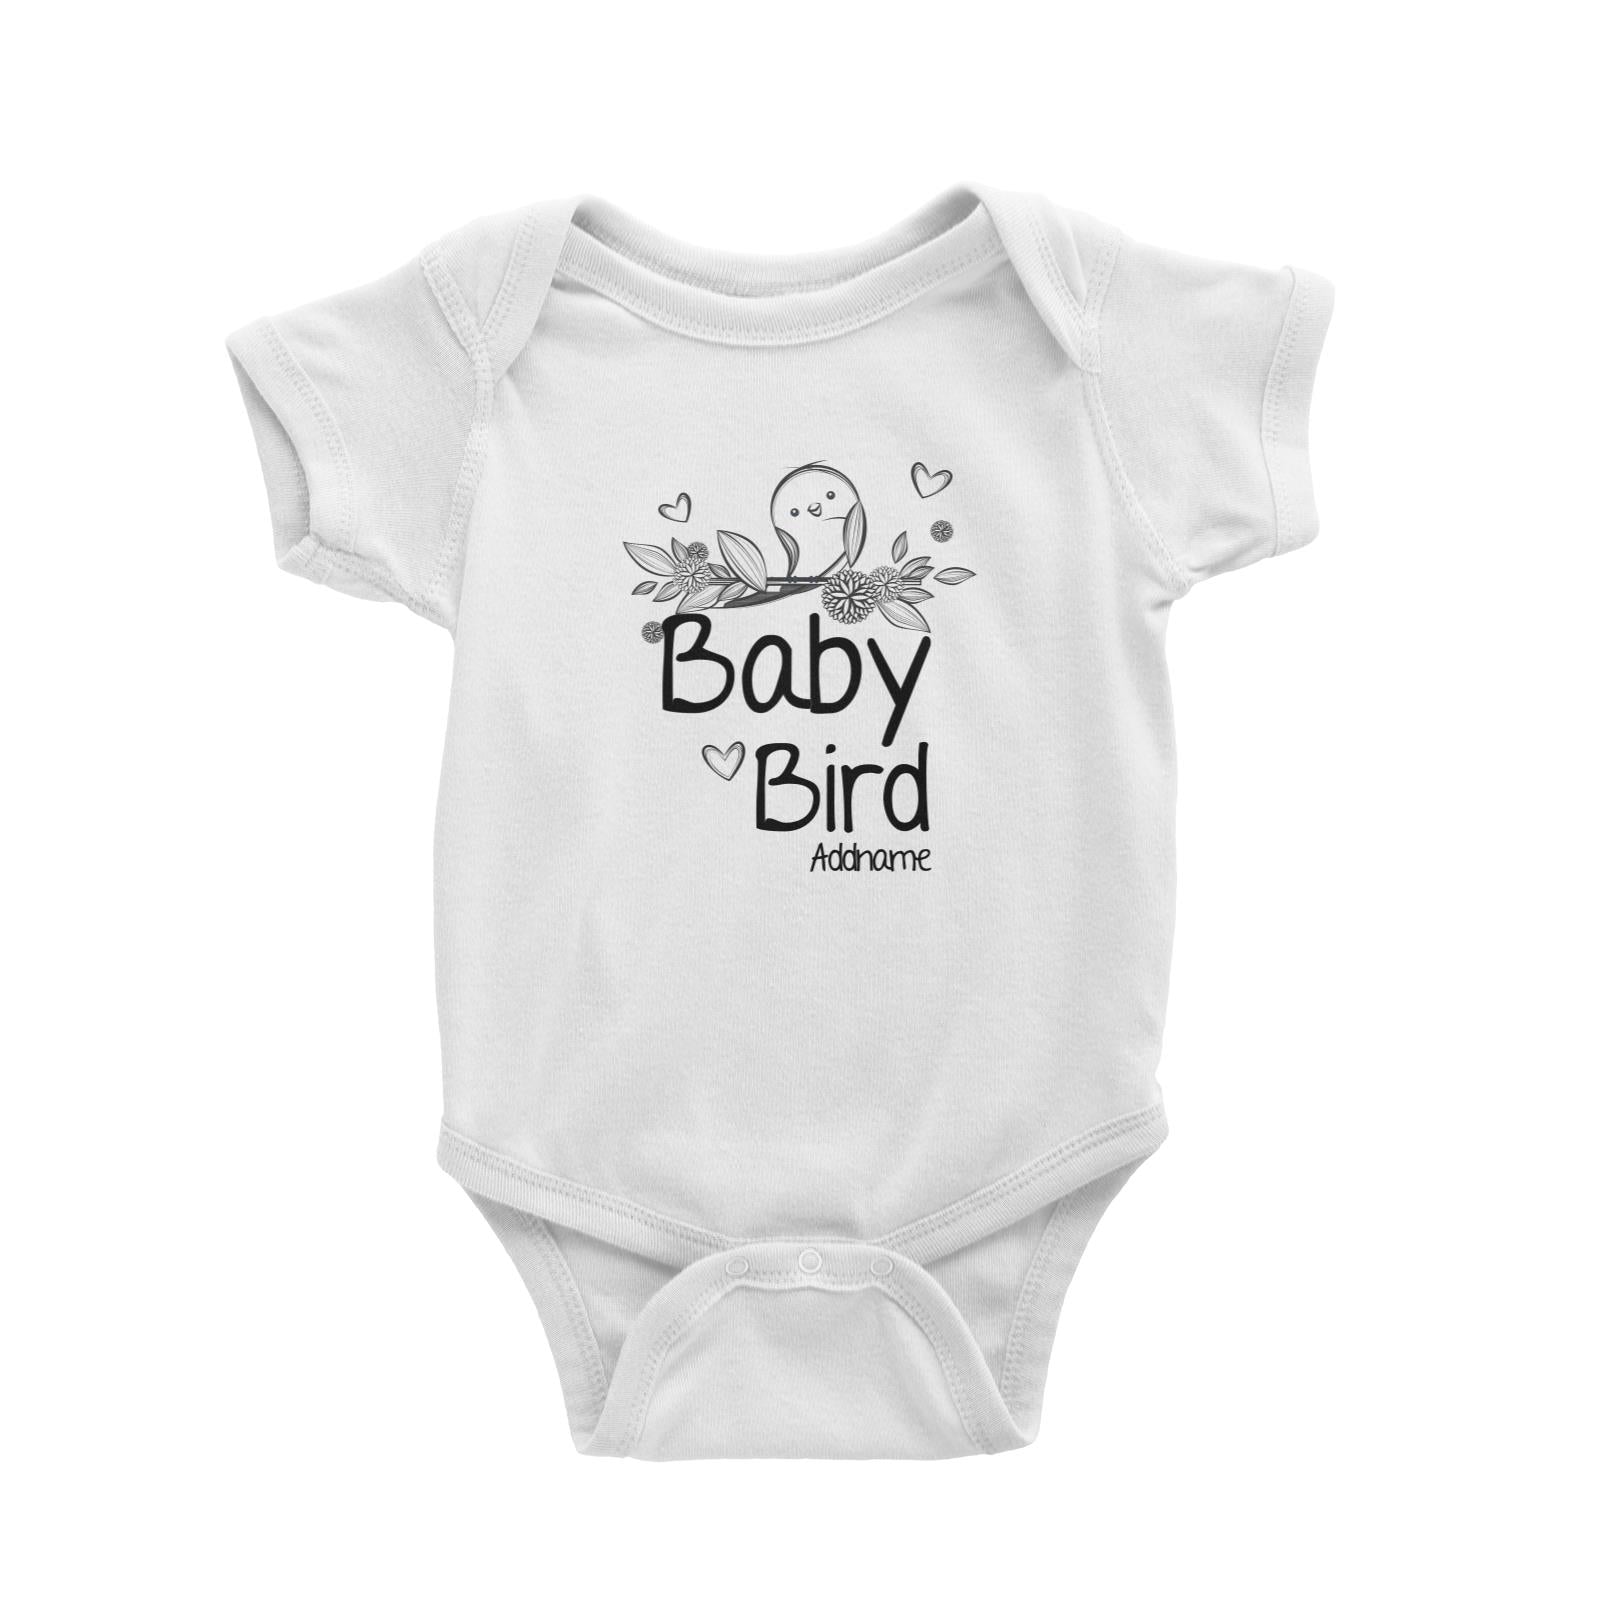 Baby Bird Baby Romper